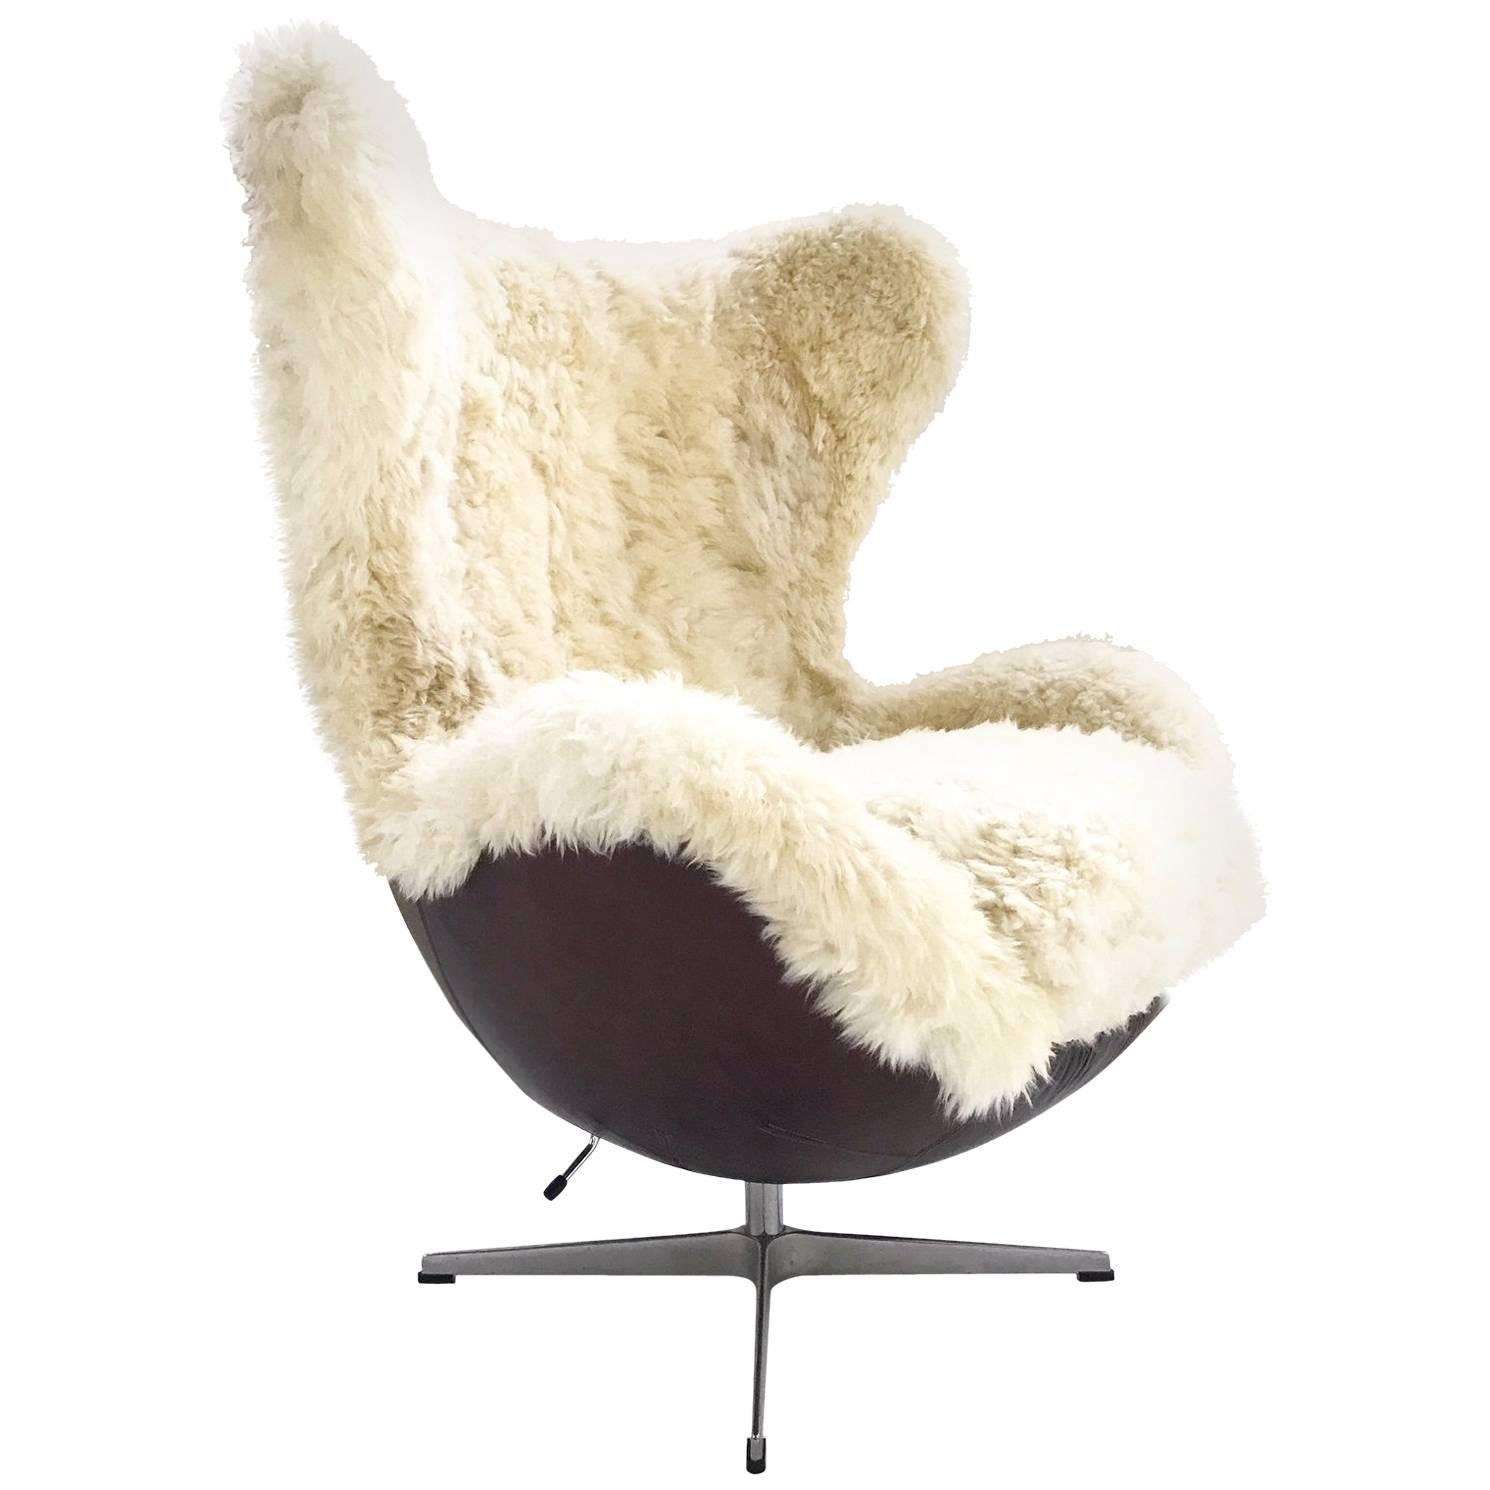 Arne Jacobsen for Fritz Hansen Egg Chair Restored in Sheepskin and Leather